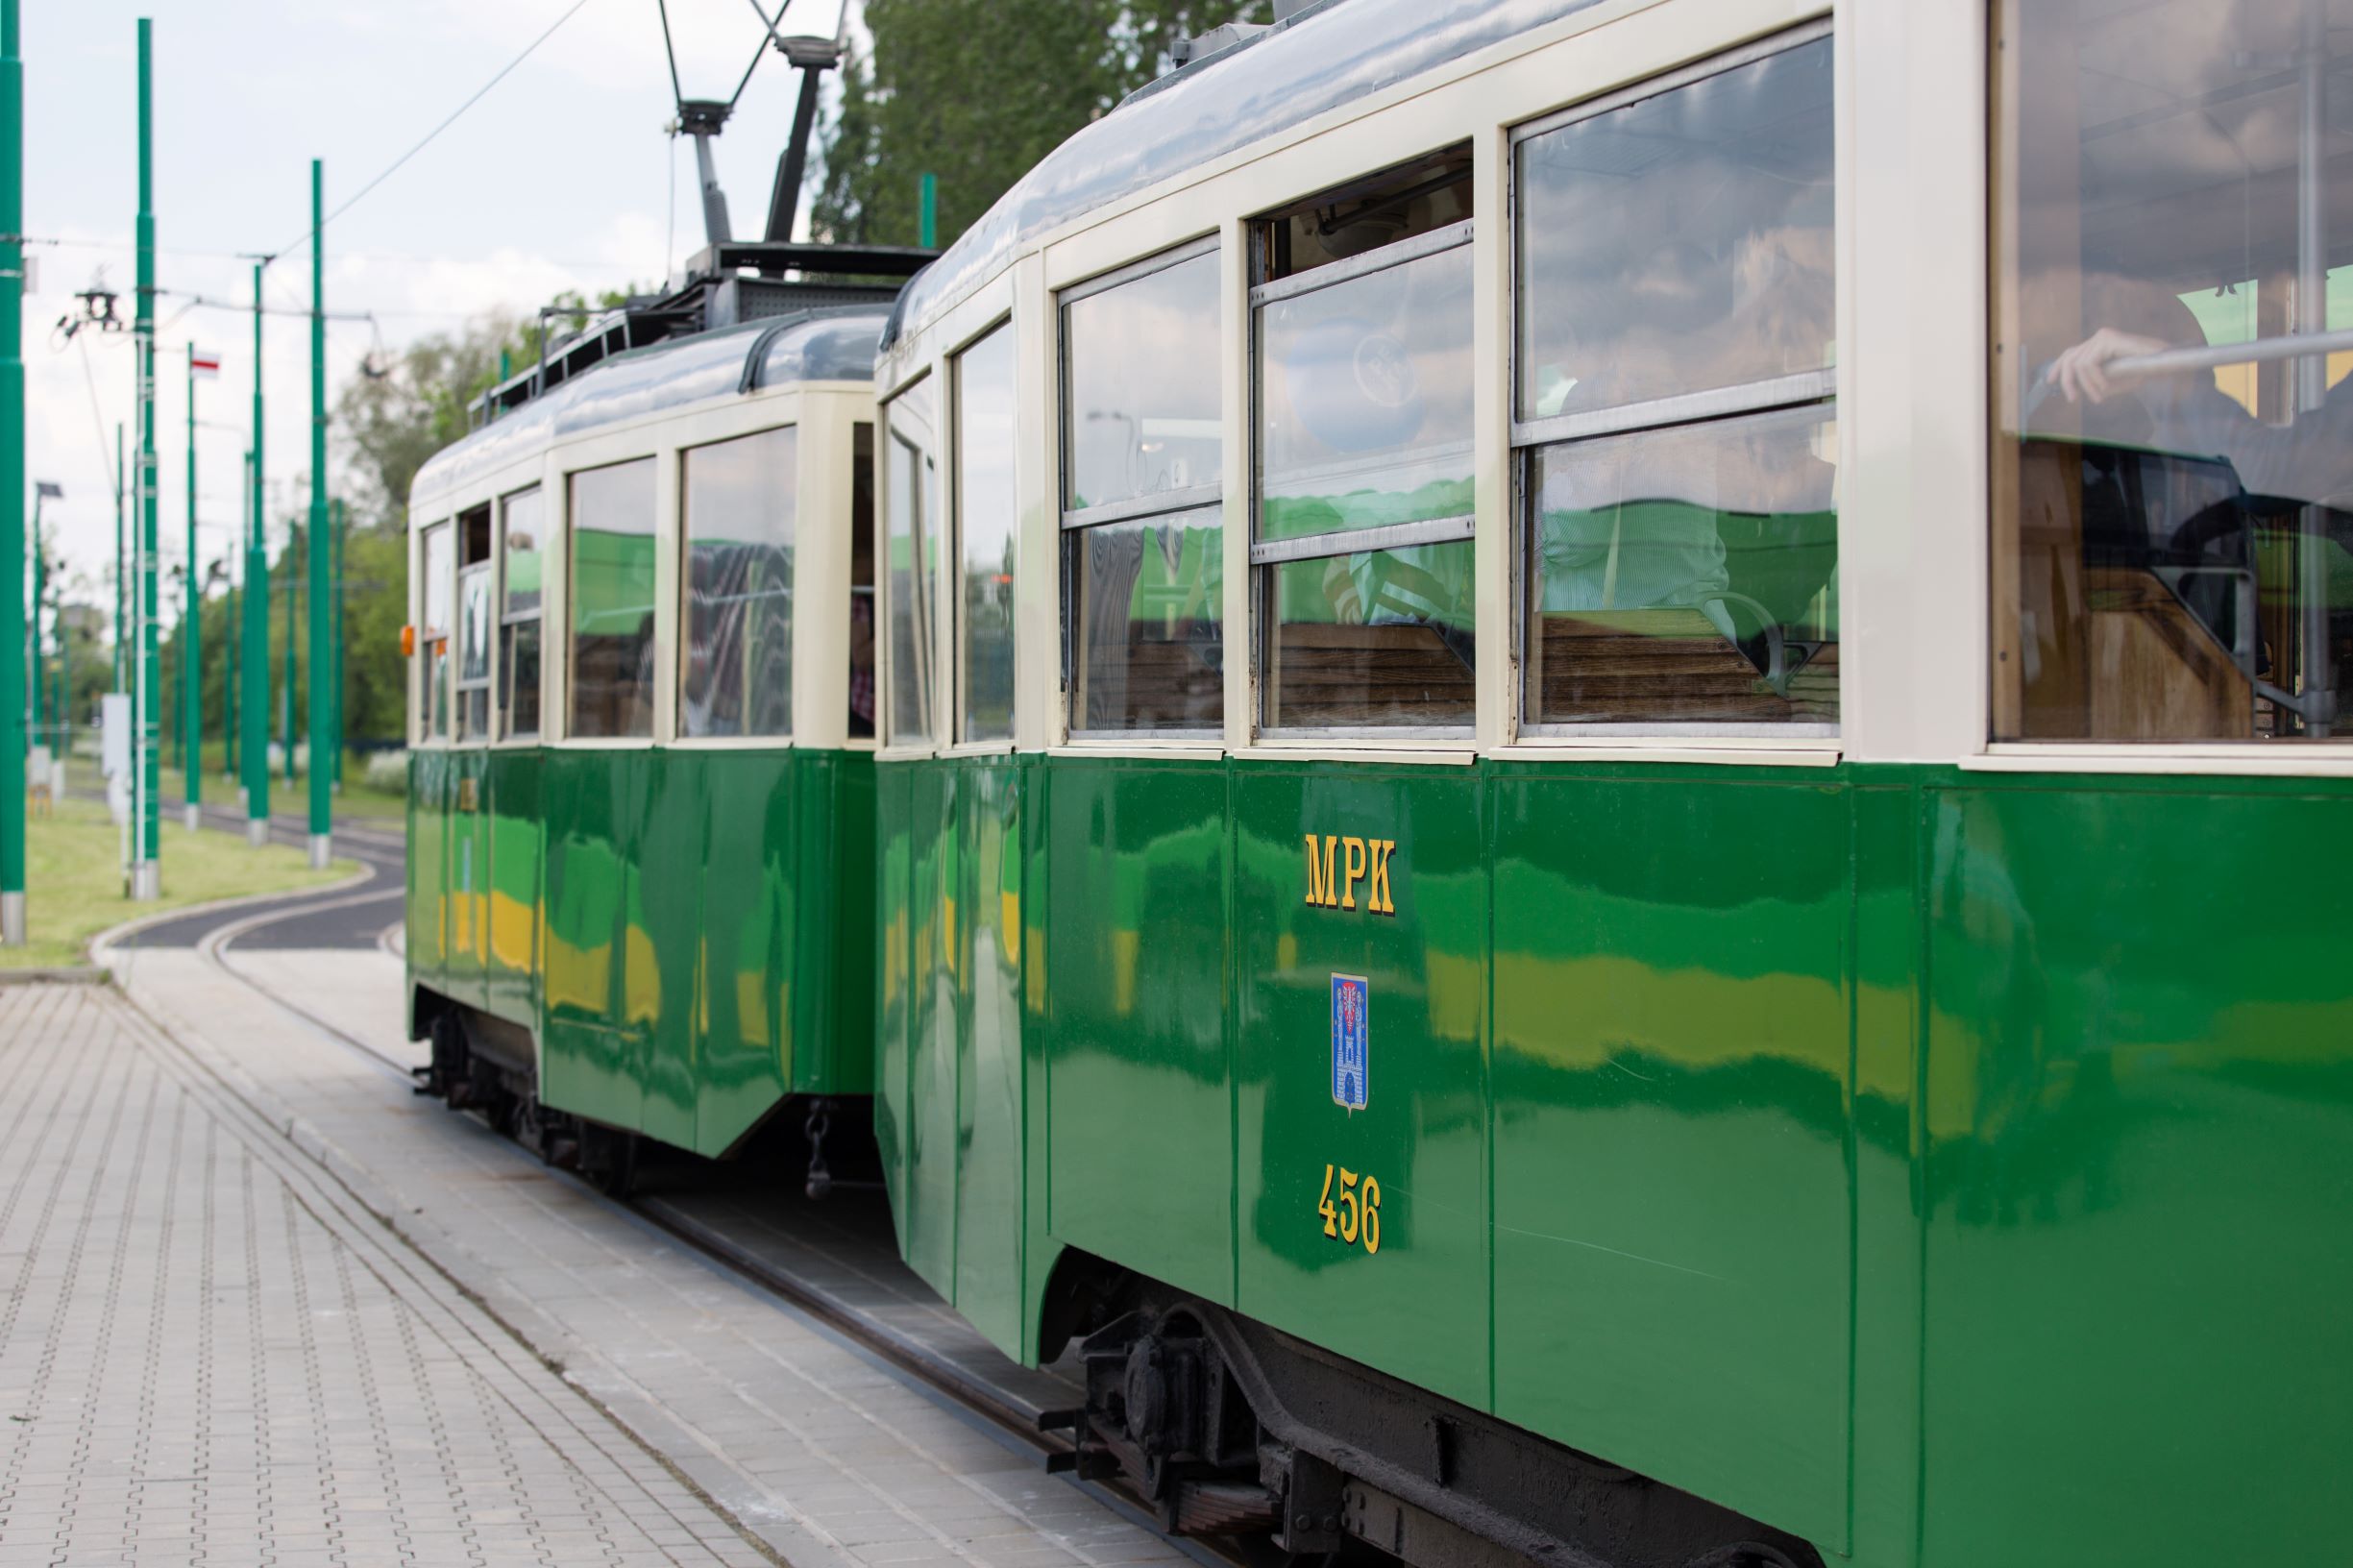 Już od połowy maja będzie można zwiedzać miasto na pokładzie zabytkowego tramwaju lub autobusu